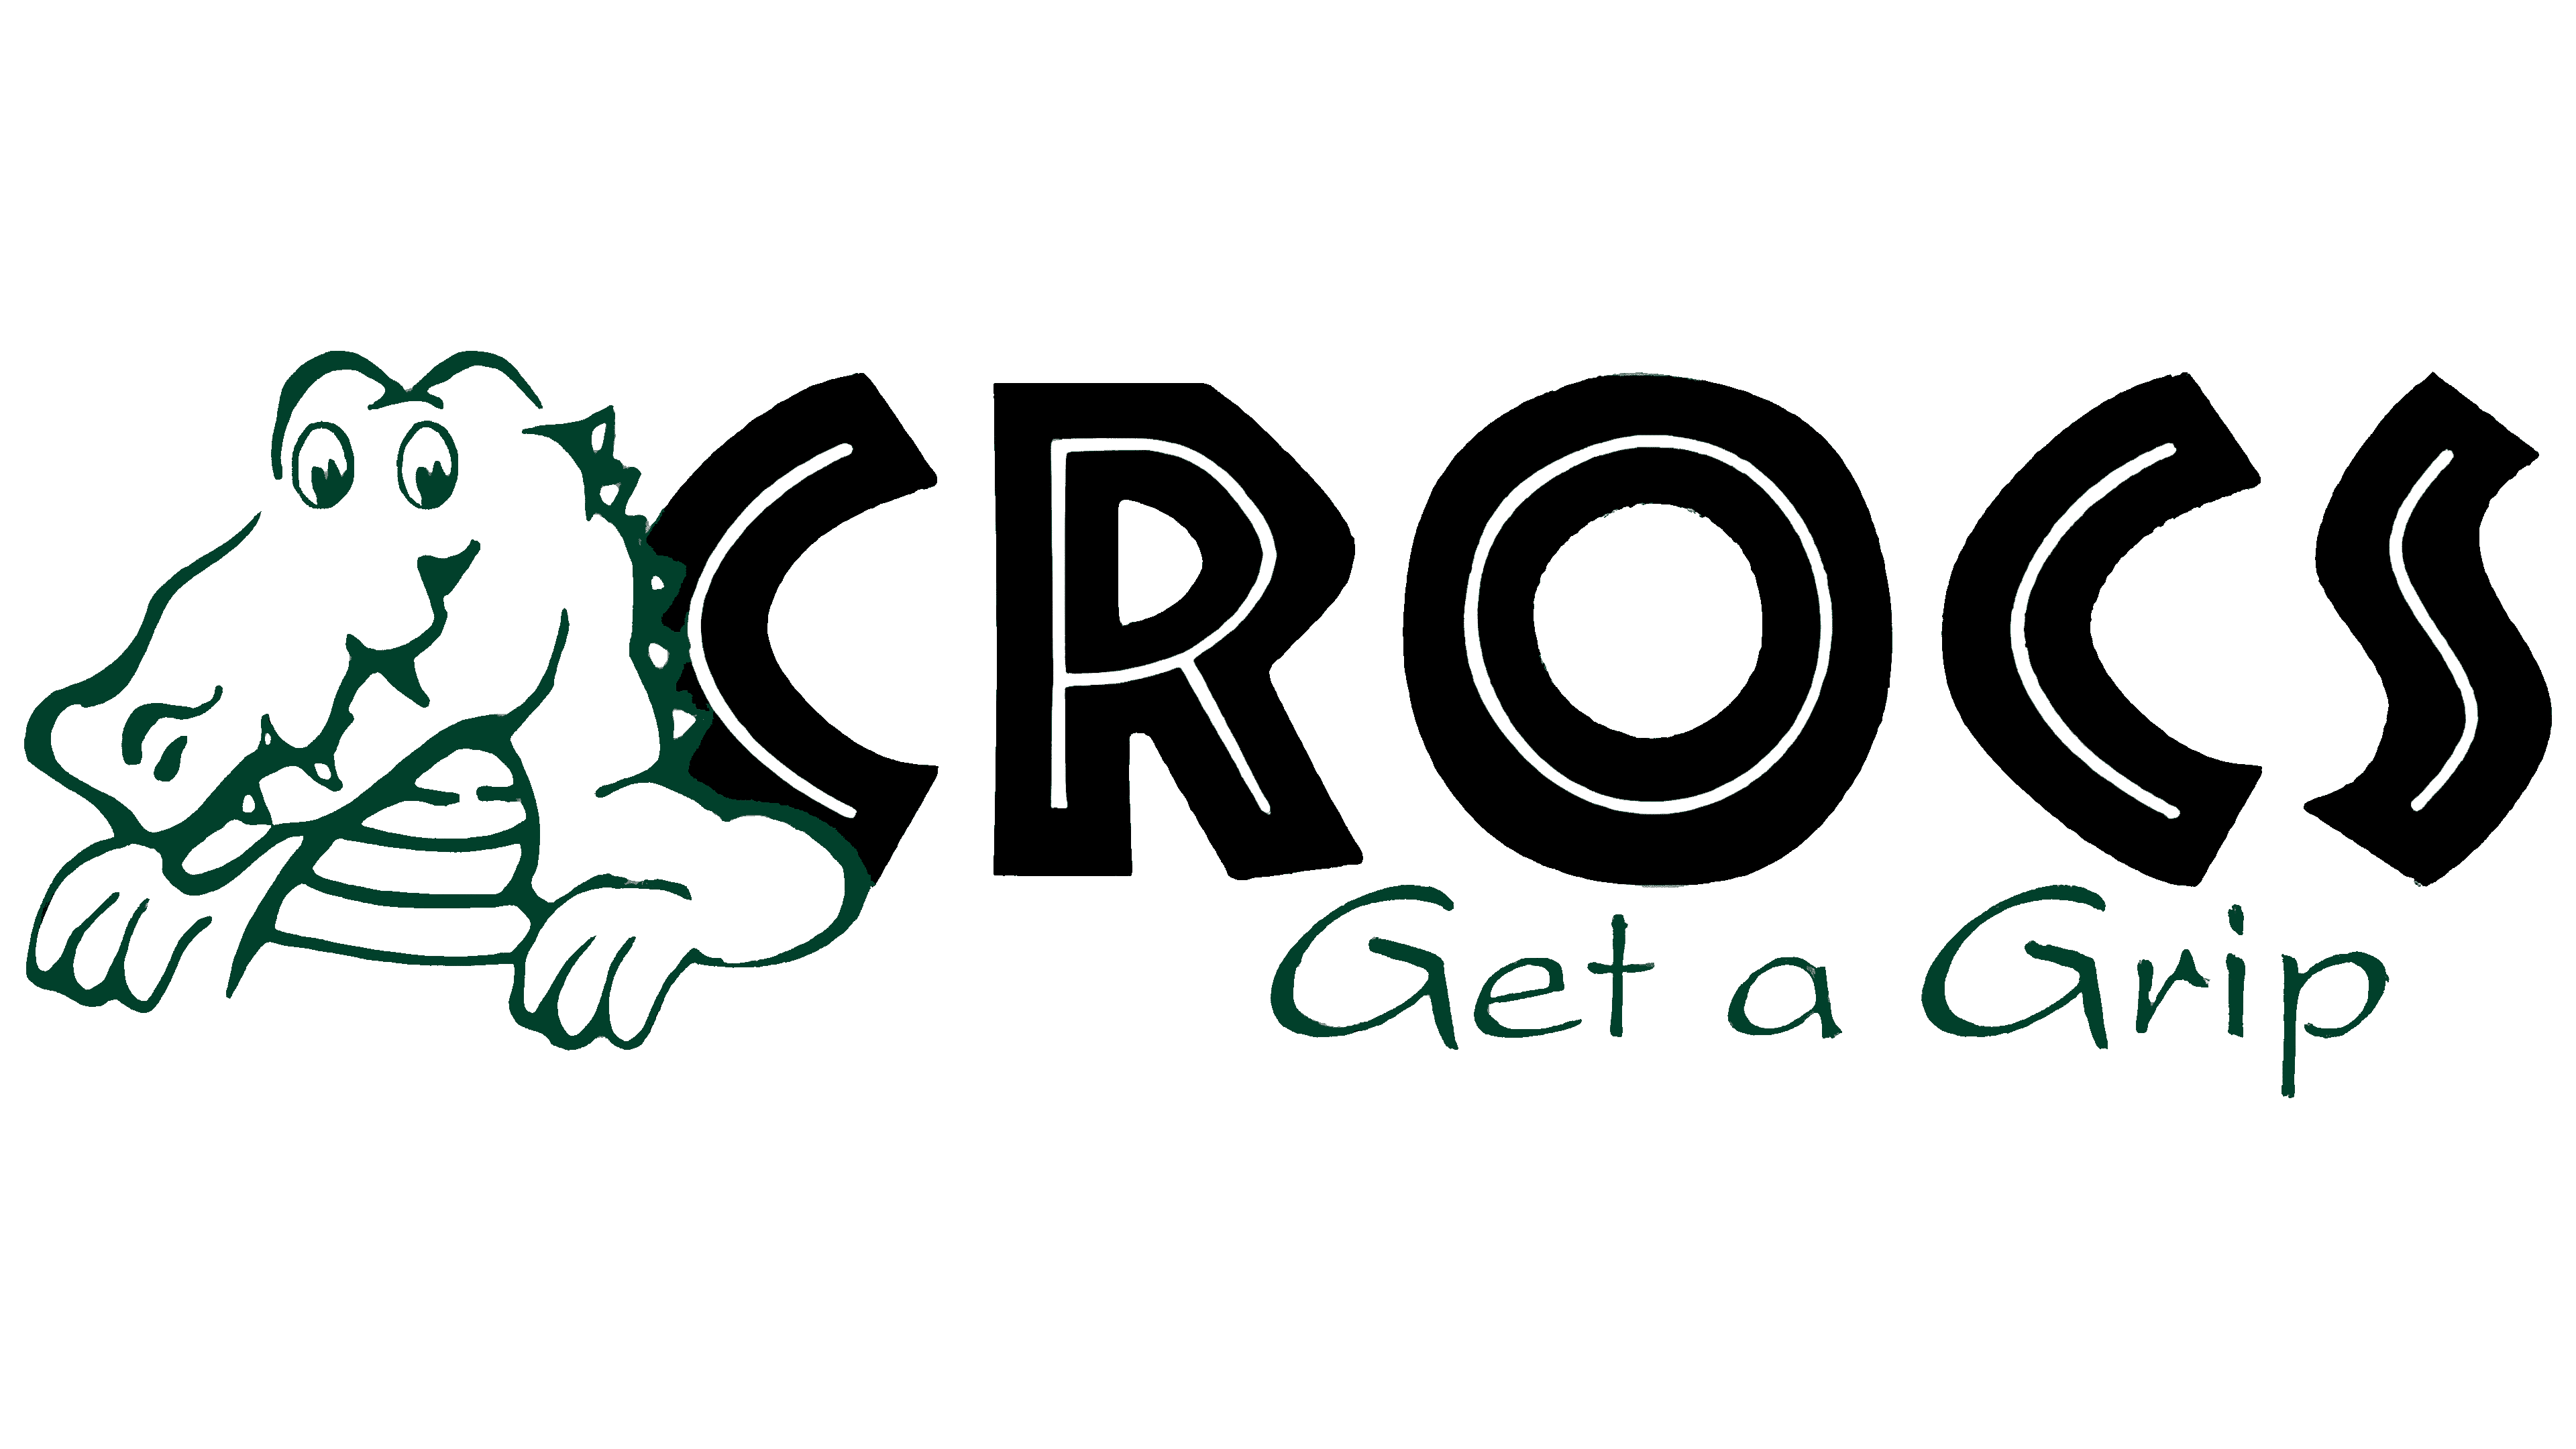 Logo Crocs Png | peacecommission.kdsg.gov.ng